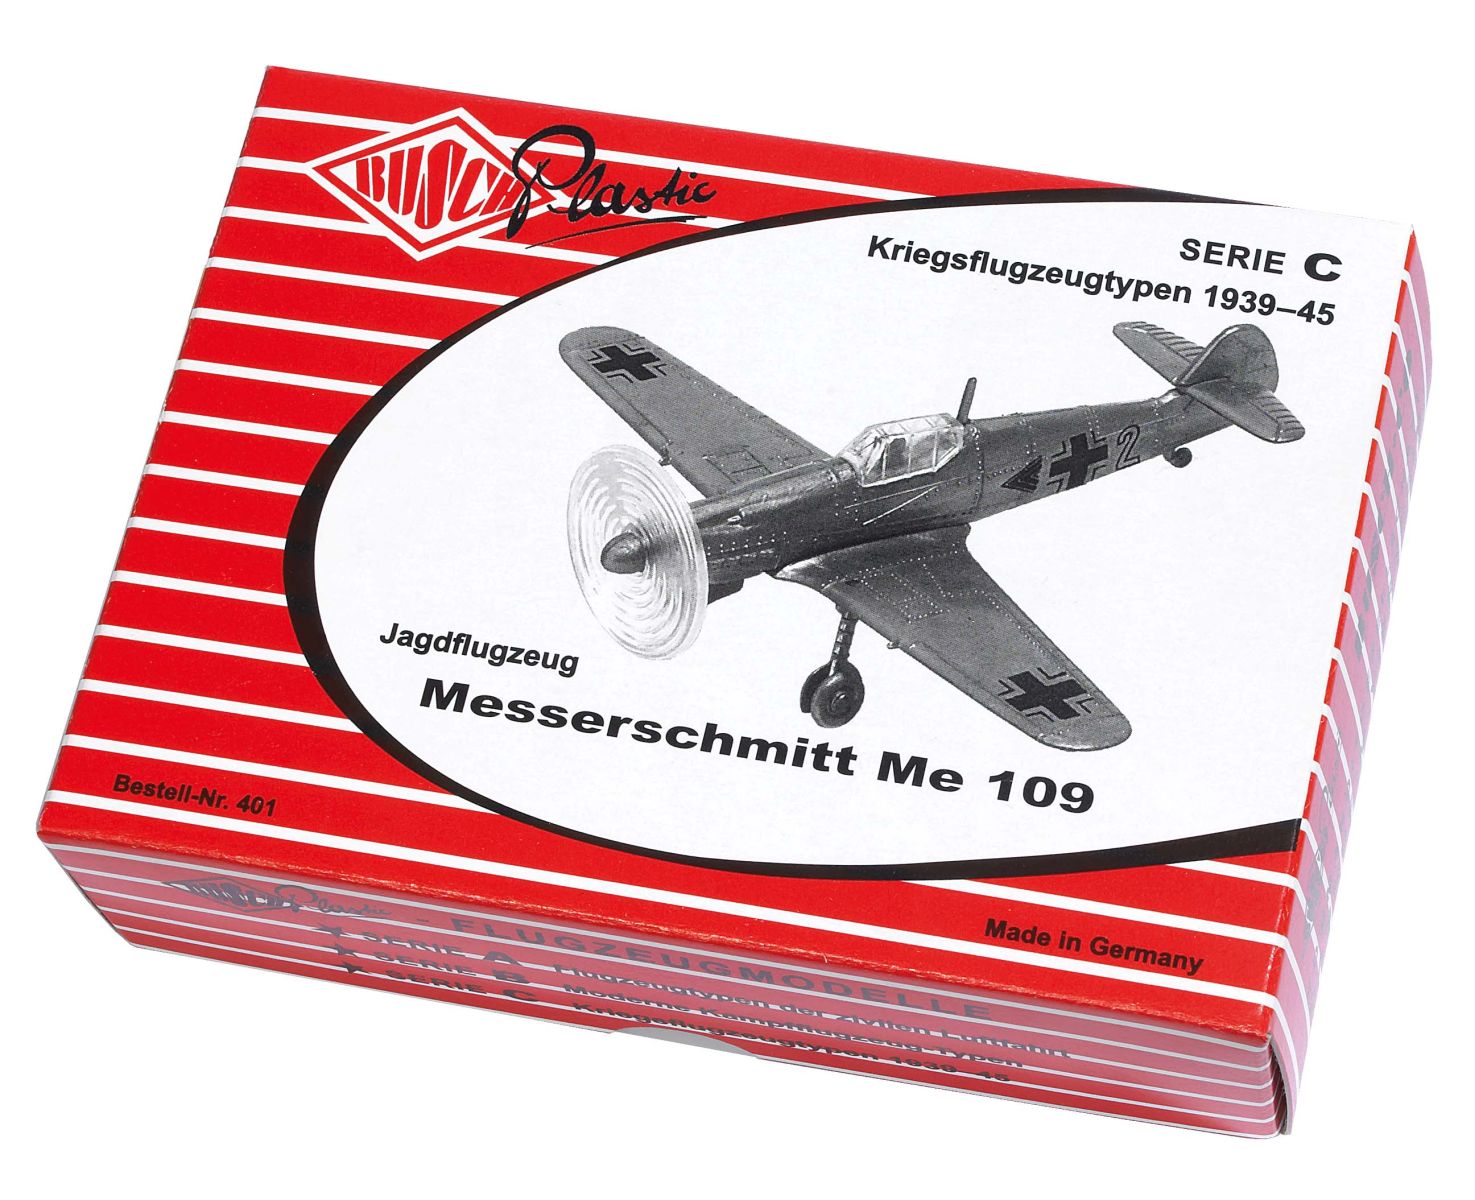 Busch 409 - Flugzeug Messerschmitt Me 109 - Jubiläumsmodell